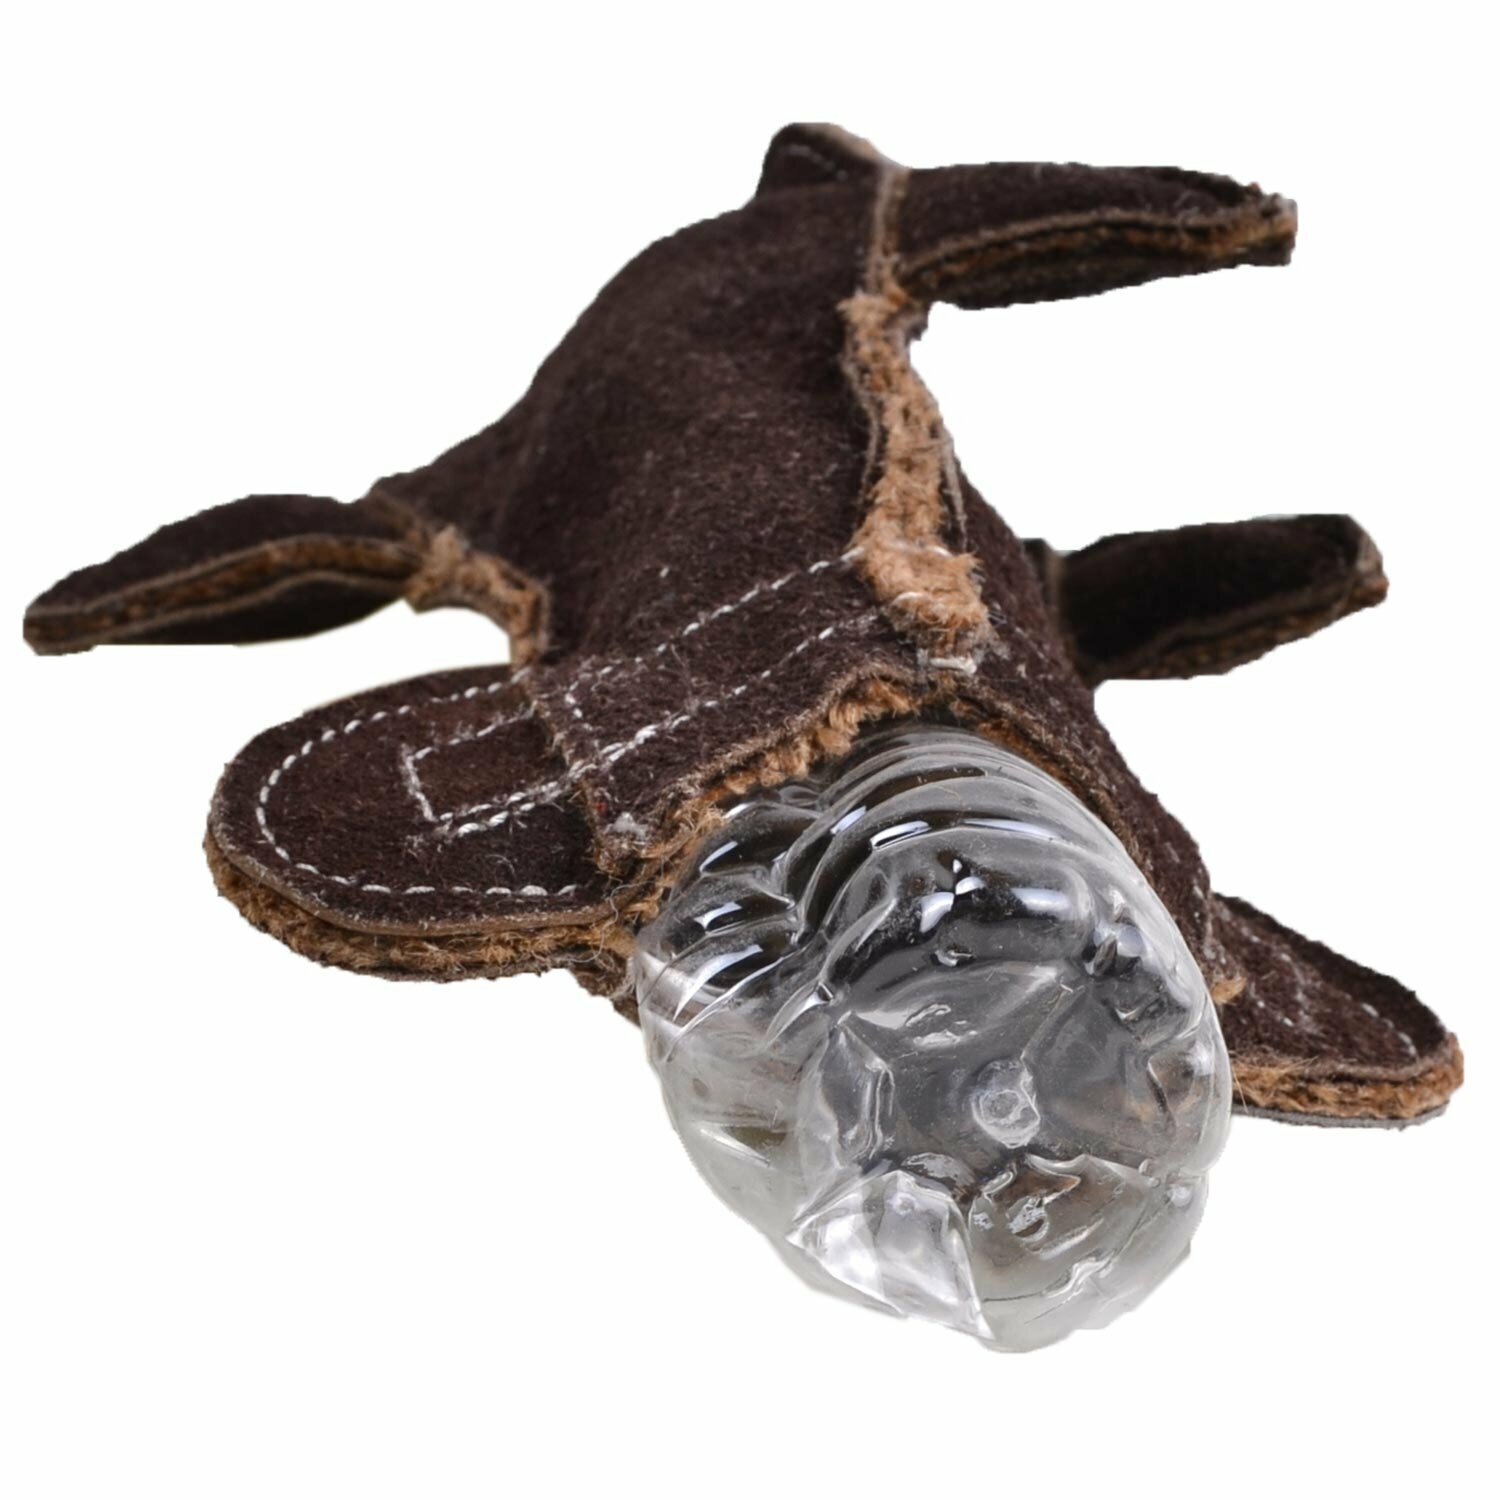 Delfín de cuero relleno de fibras de coco y botella de plástico reciclada, que al morderlo hará ruidos interesantes para los perros